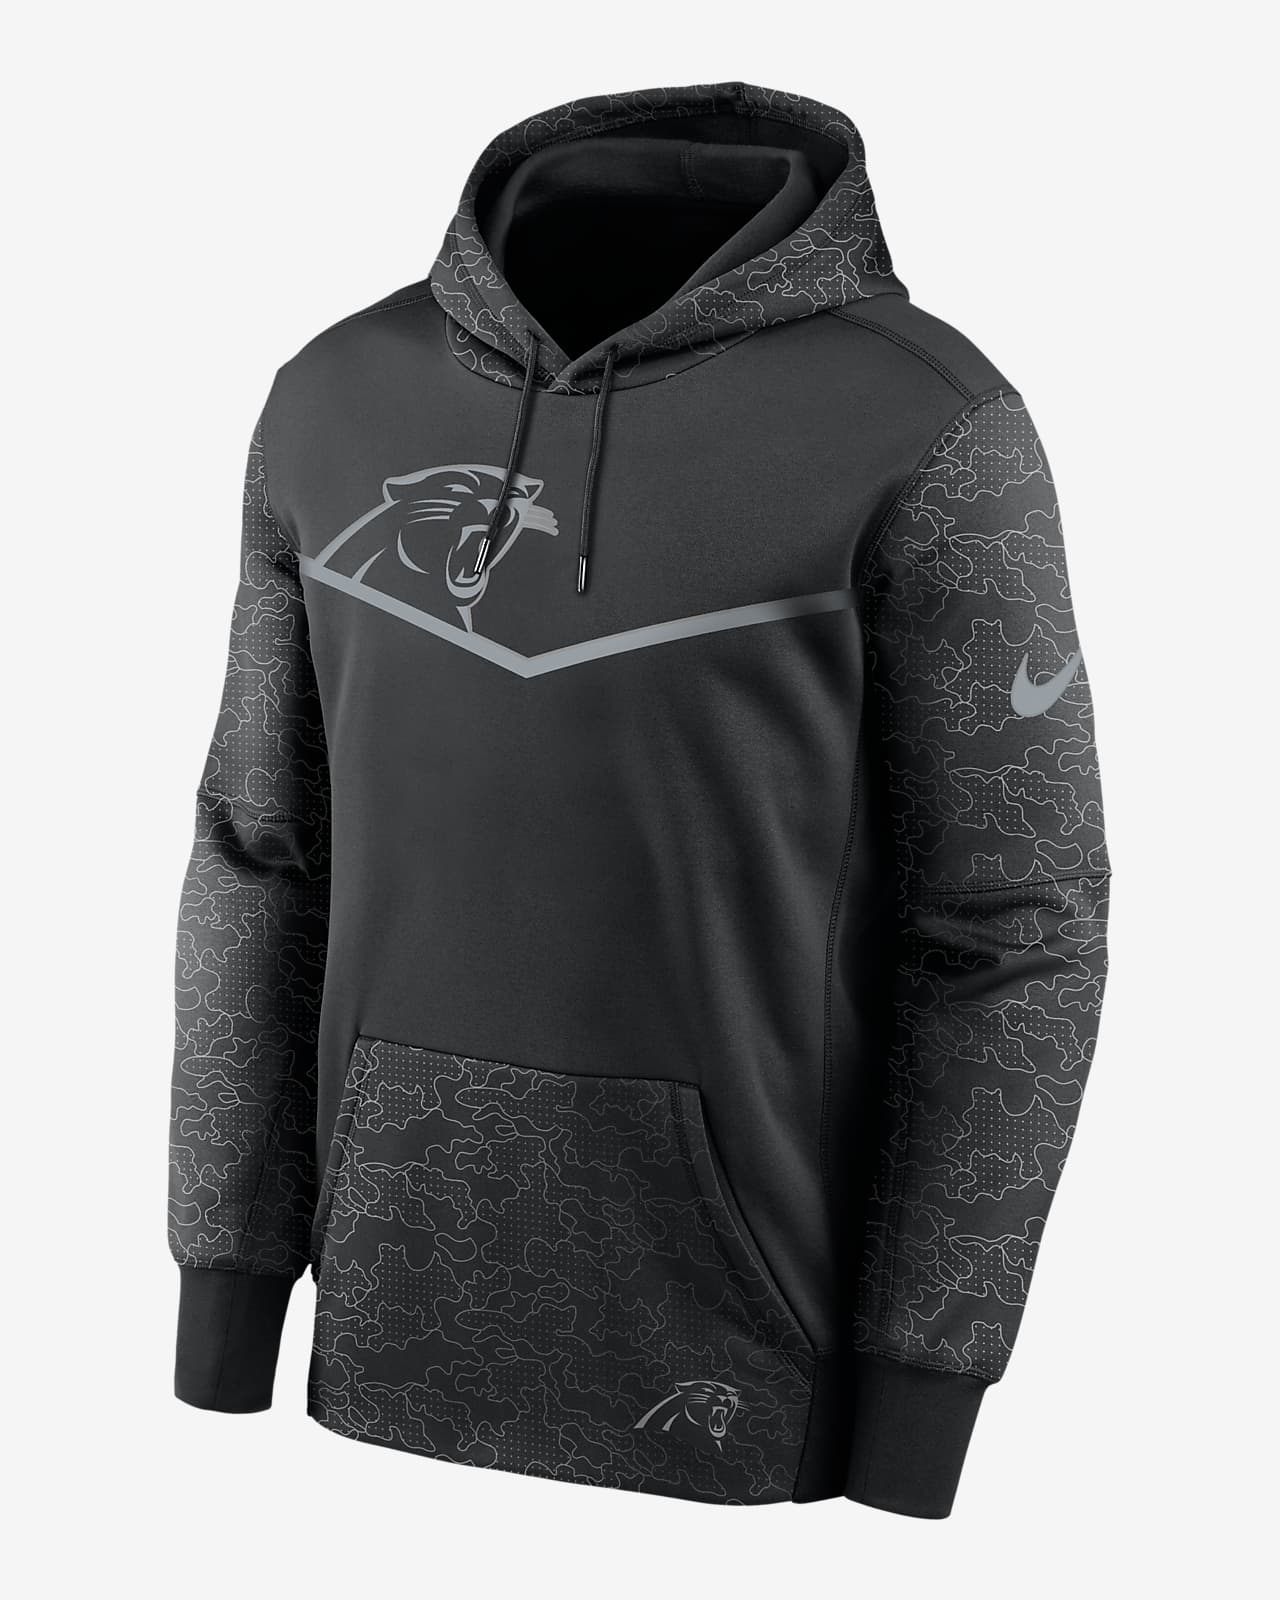 Bungalow Abandono Sabueso Nike Therma RFLCTV Logo (NFL Carolina Panthers) Men's Pullover Hoodie. Nike .com